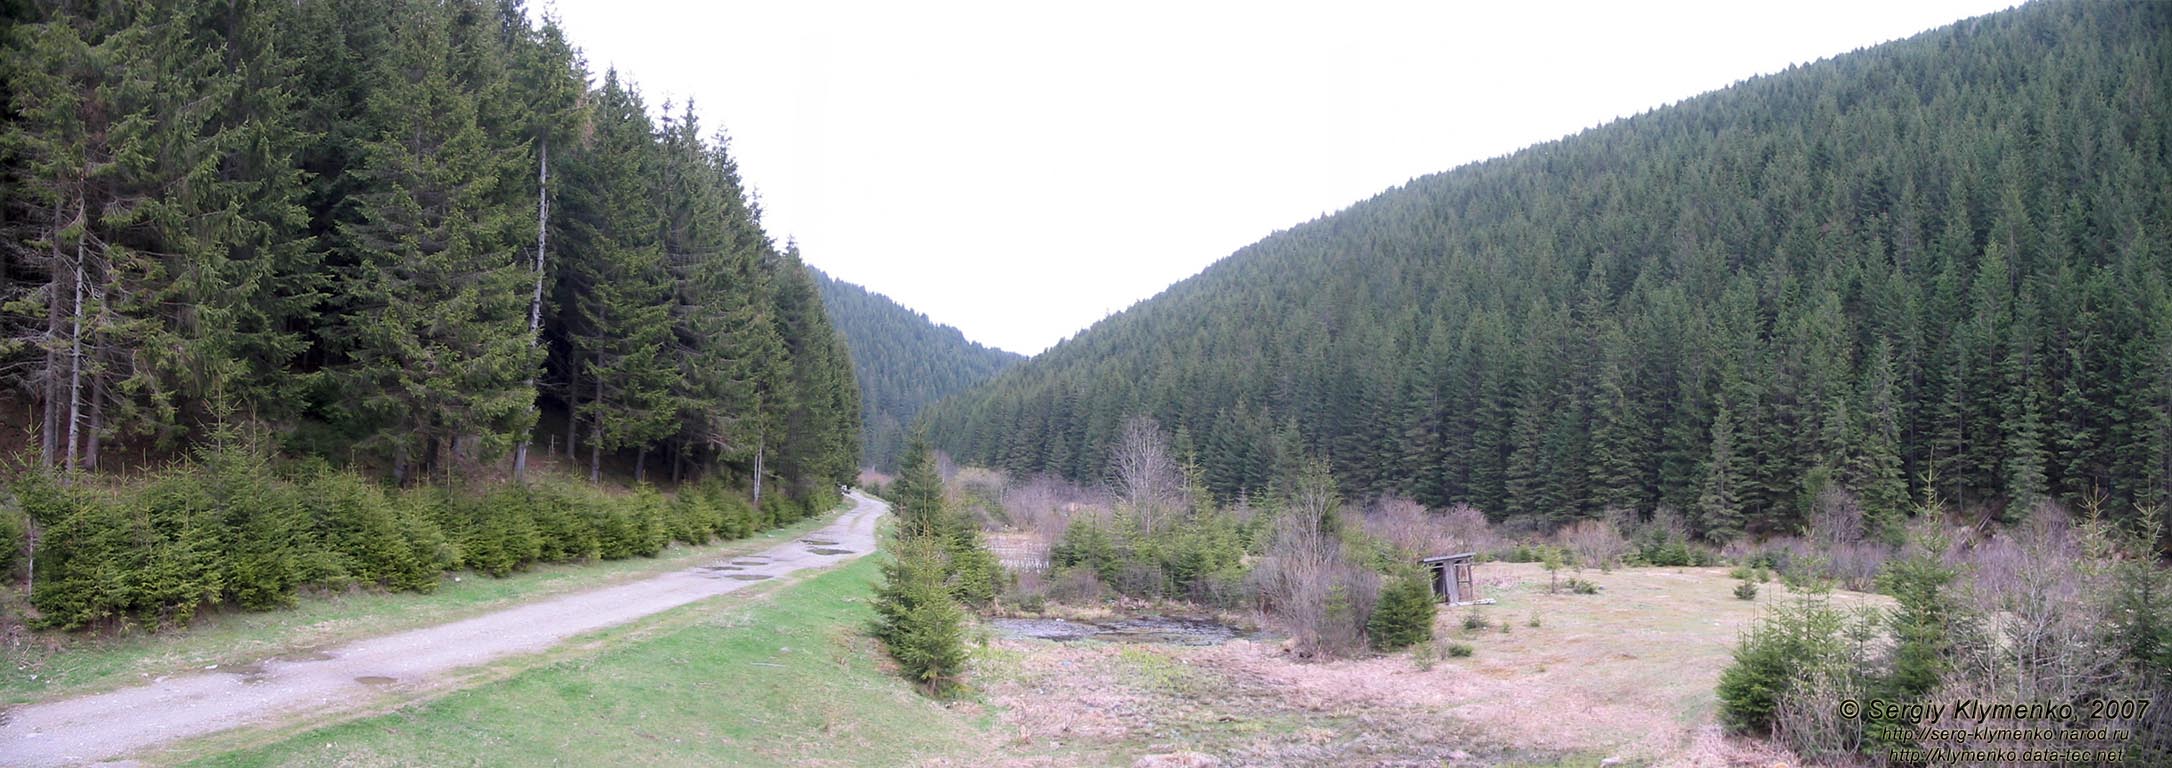 Фото Карпат, вид на Черный Черемош и окрестные горы от покинутой усадьбы.